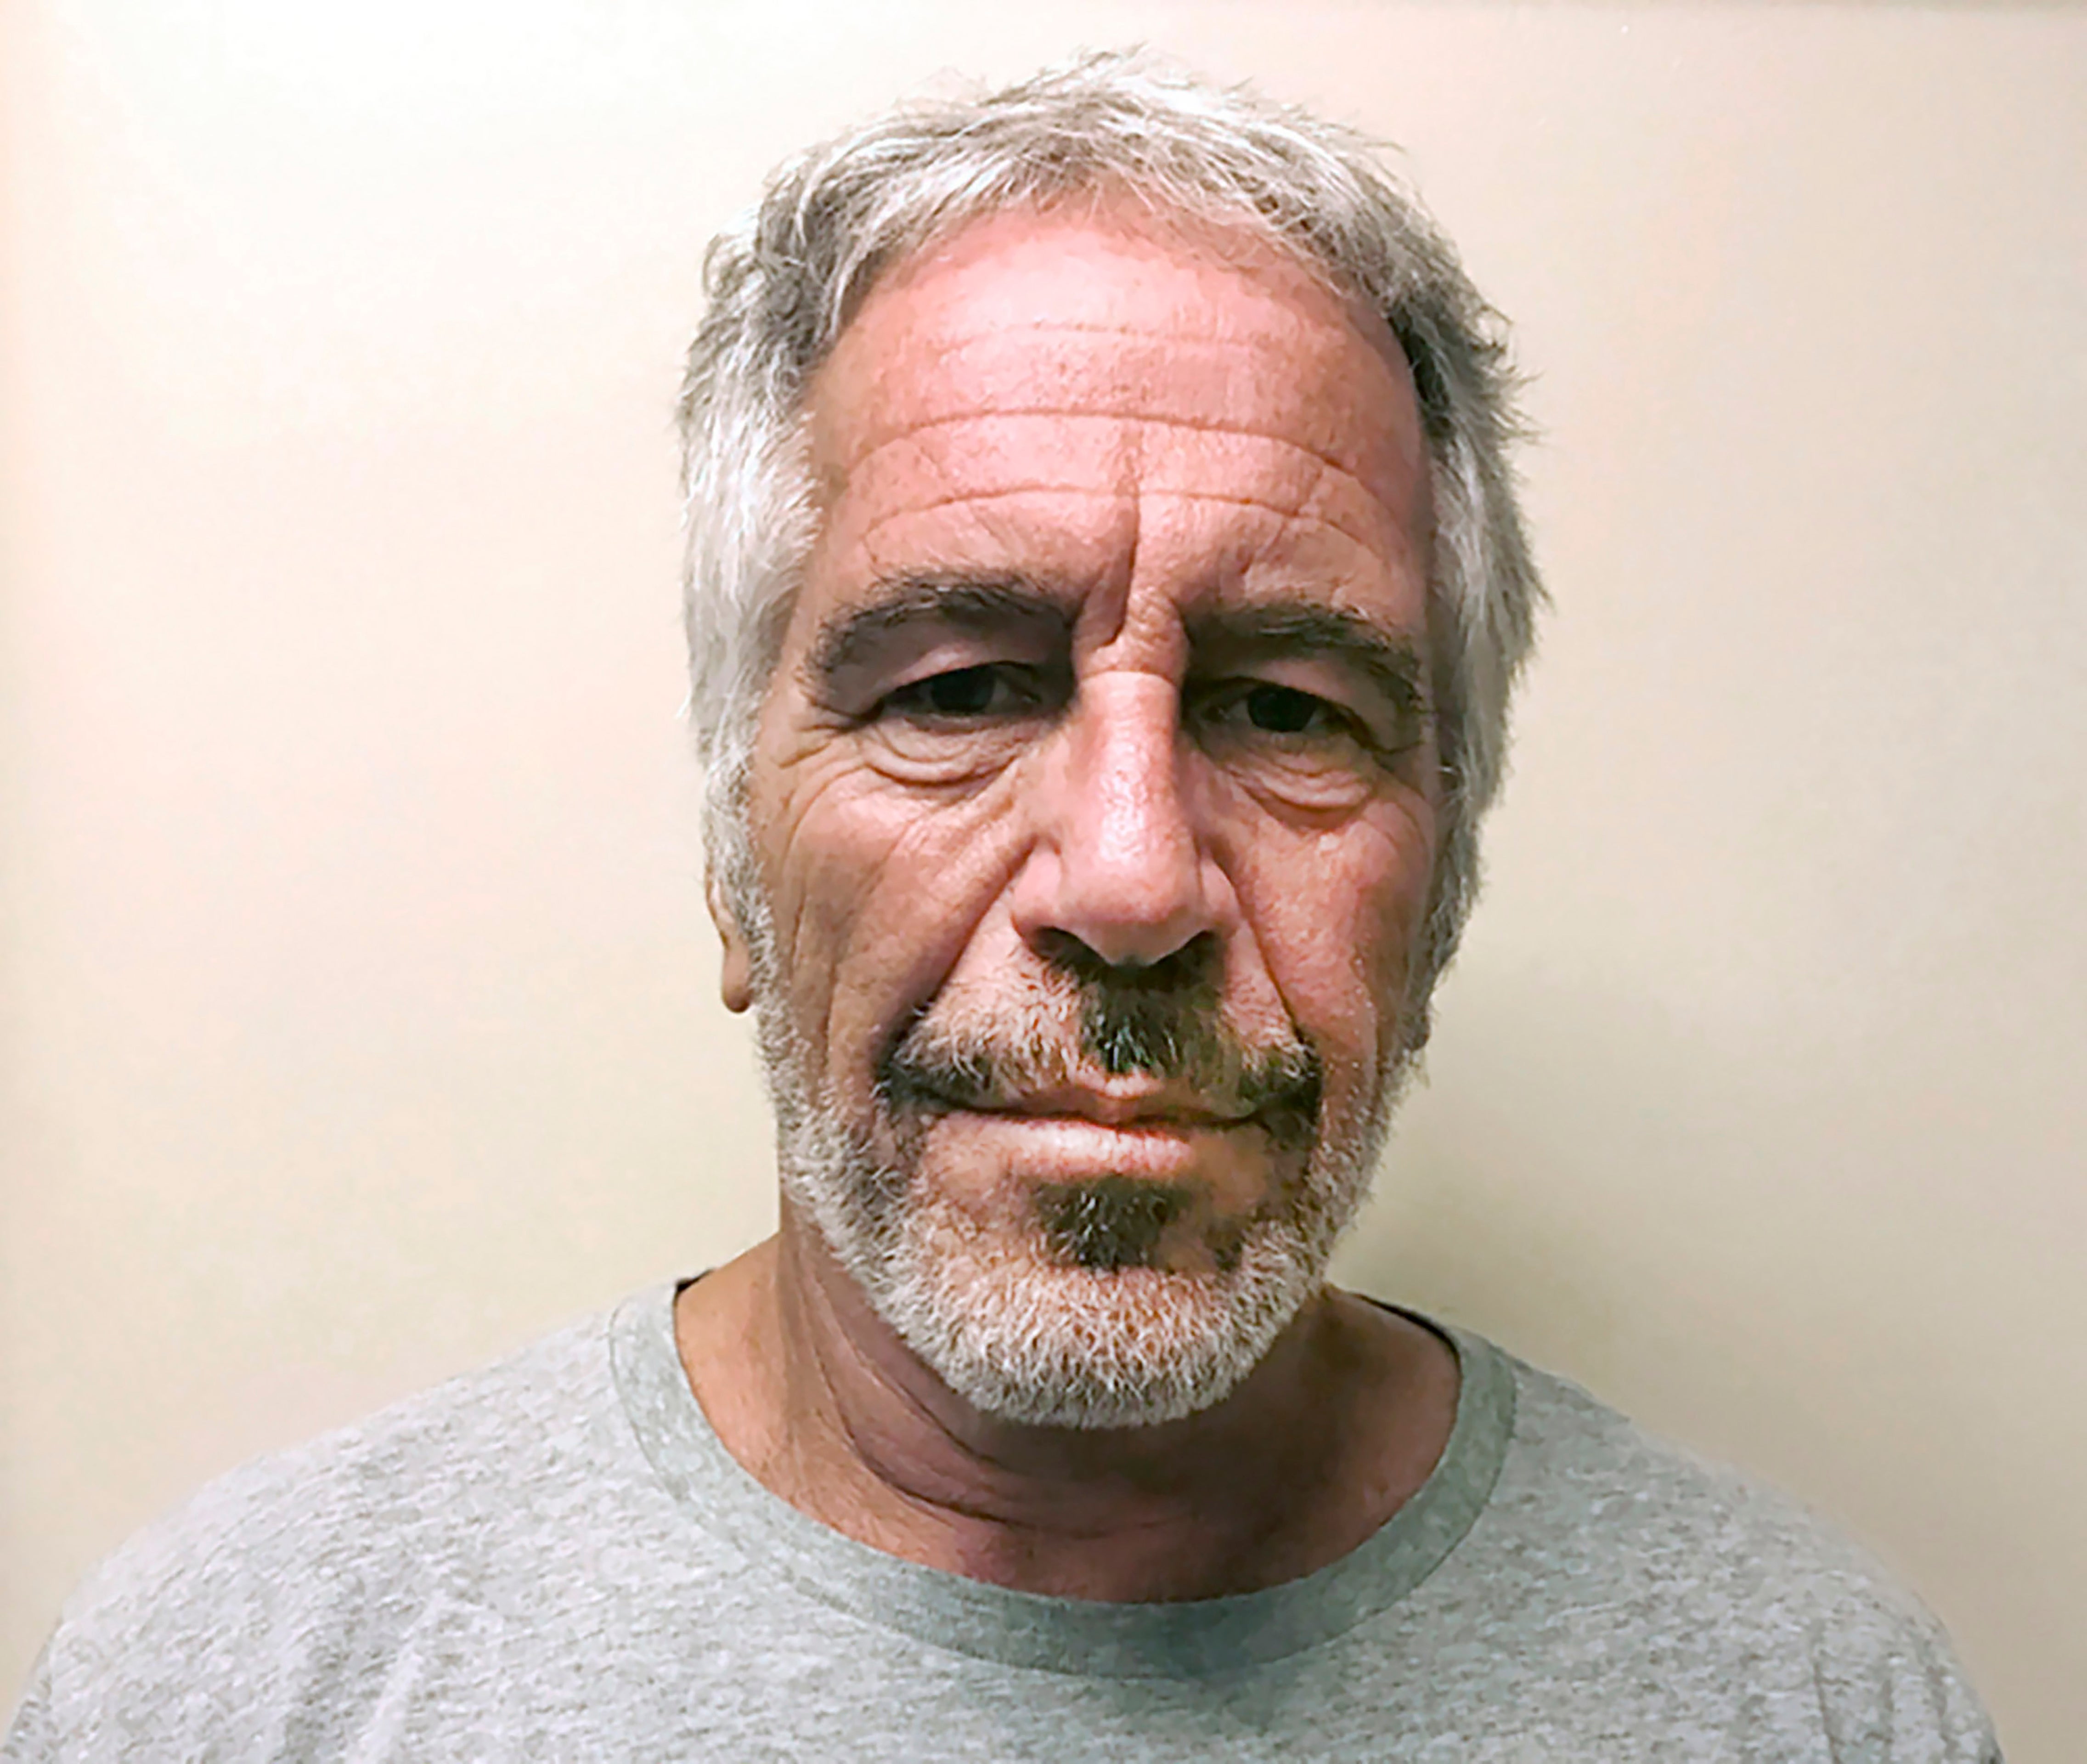 Jeffrey Epstein was found dead in his Manhattan jail cell in 2019